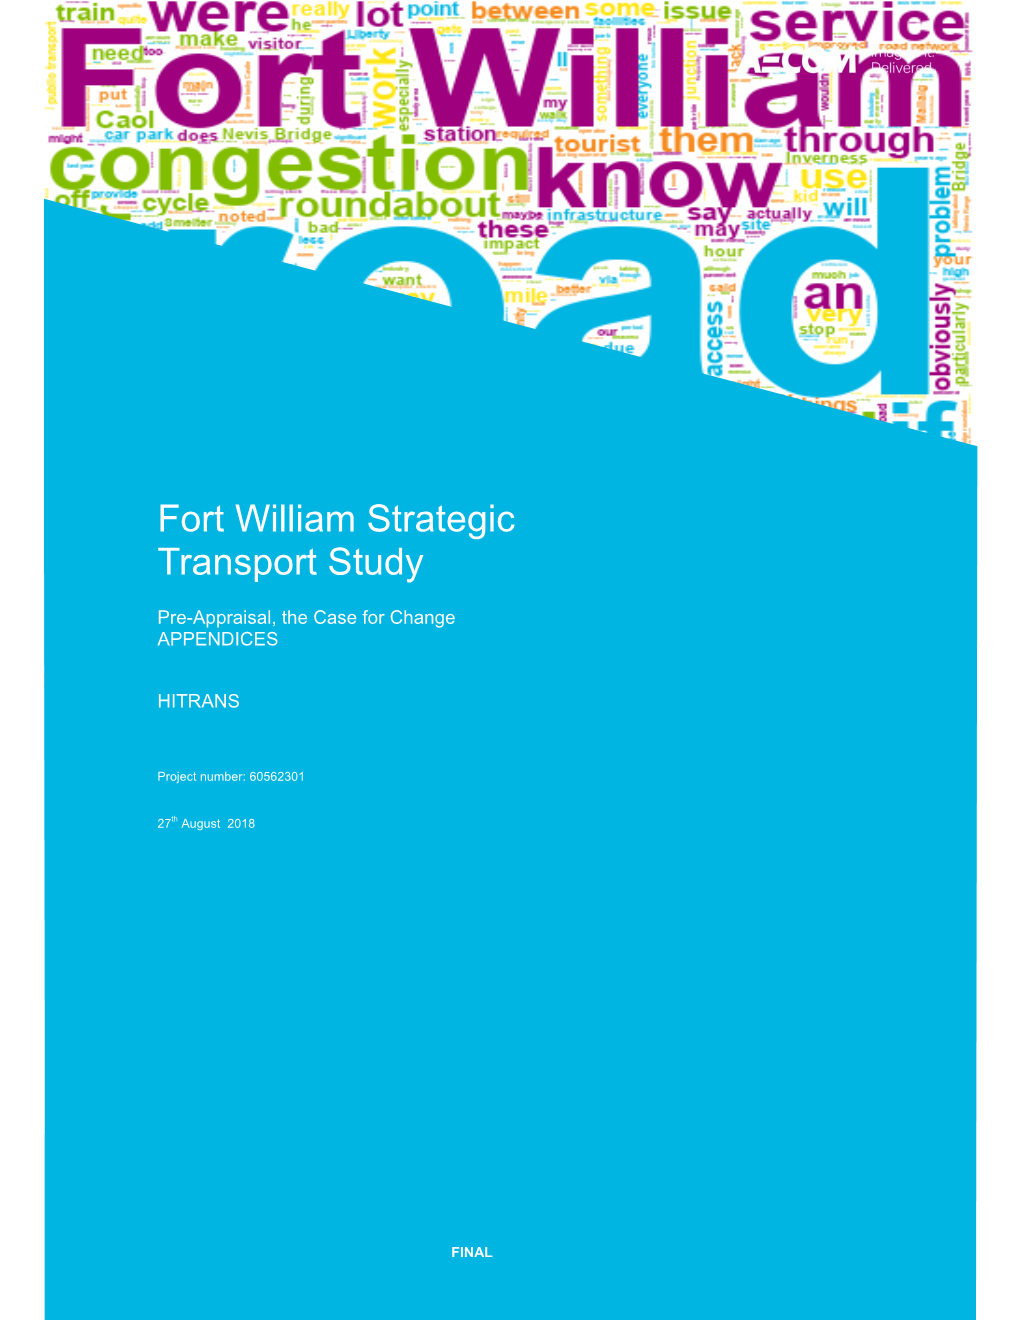 Fort William Strategic Transport Study- Appendices